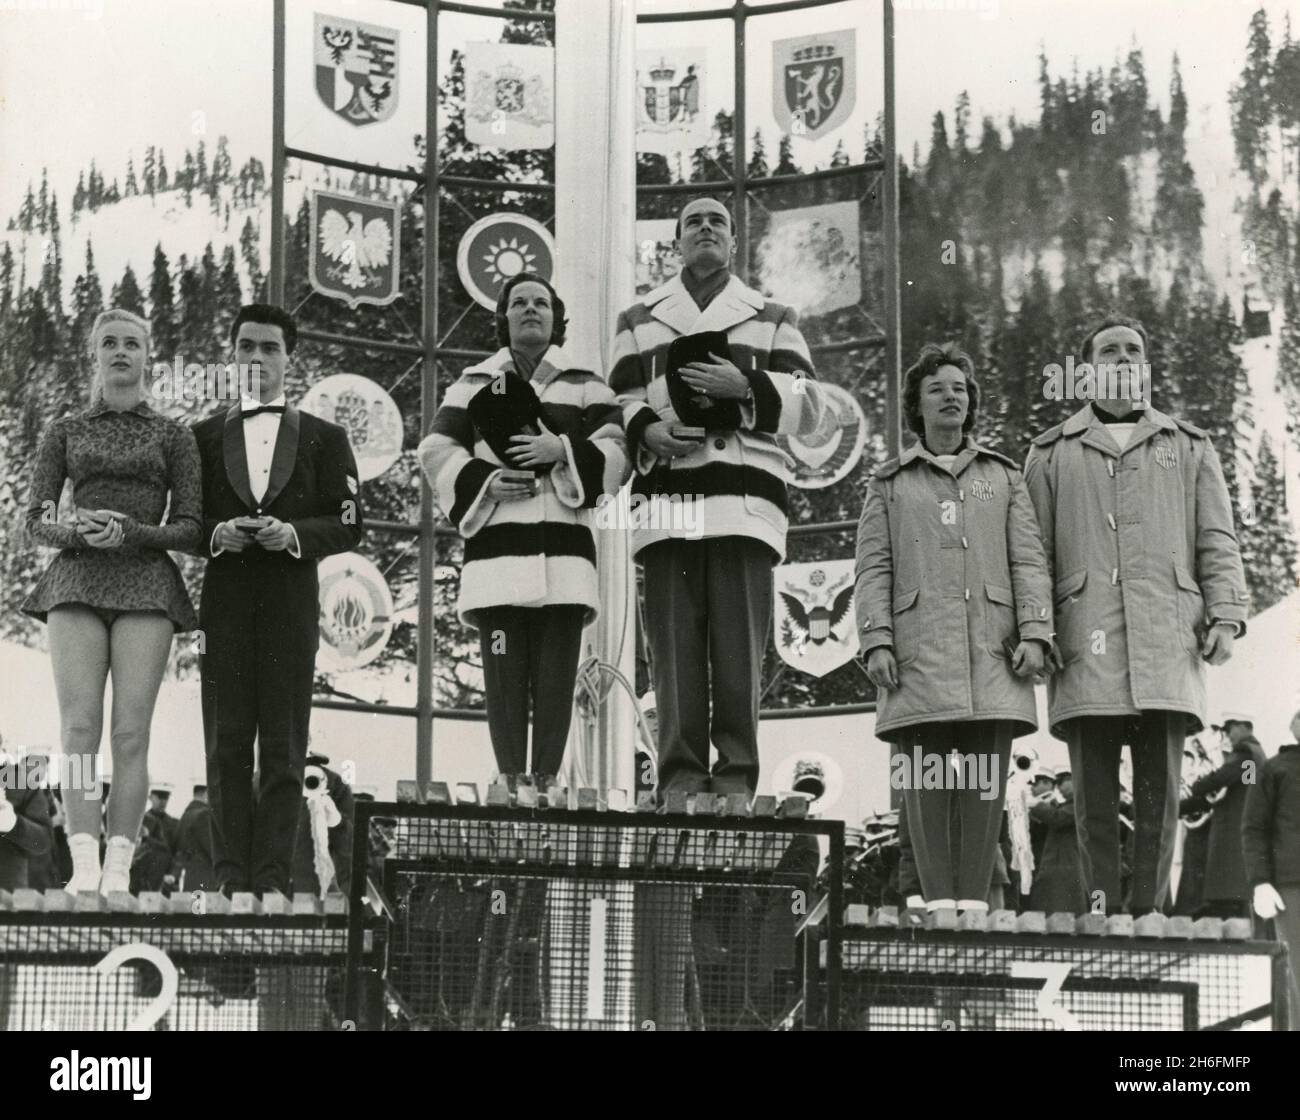 Pares figura patinadores campeones, de la izquierda: Marika Kilius y Hans Baumler, Alemania, medalla de plata; Barbara Wagner y Robert Paul, Canadá, medalla de oro; Nancy y Ronald Ludington, EE.UU., medalla de bronce, VIII Juegos Olímpicos, Squaw Valley, EE.UU. 1960 Foto de stock